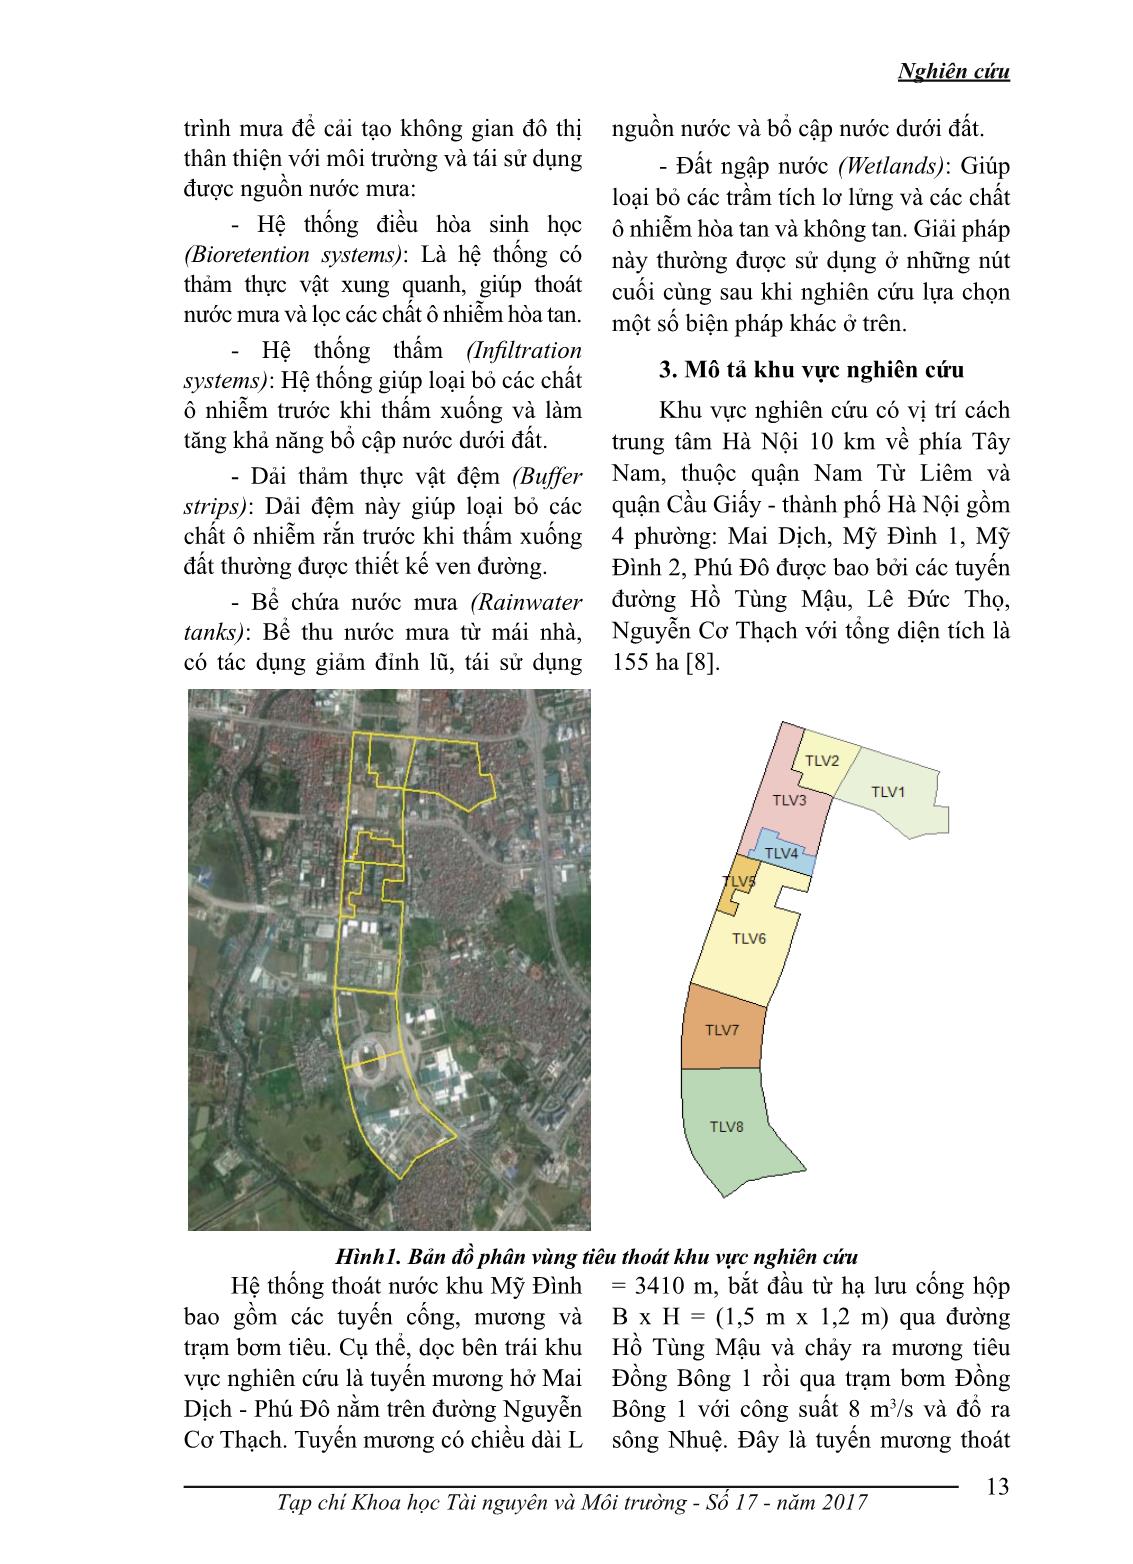 Ứng dụng mô hình music mô phỏng hệ thống tiêu thoát nước mưa: trường hợp nghiên cứu ở khu đô thị Mỹ Đình, Hà Nội trang 3